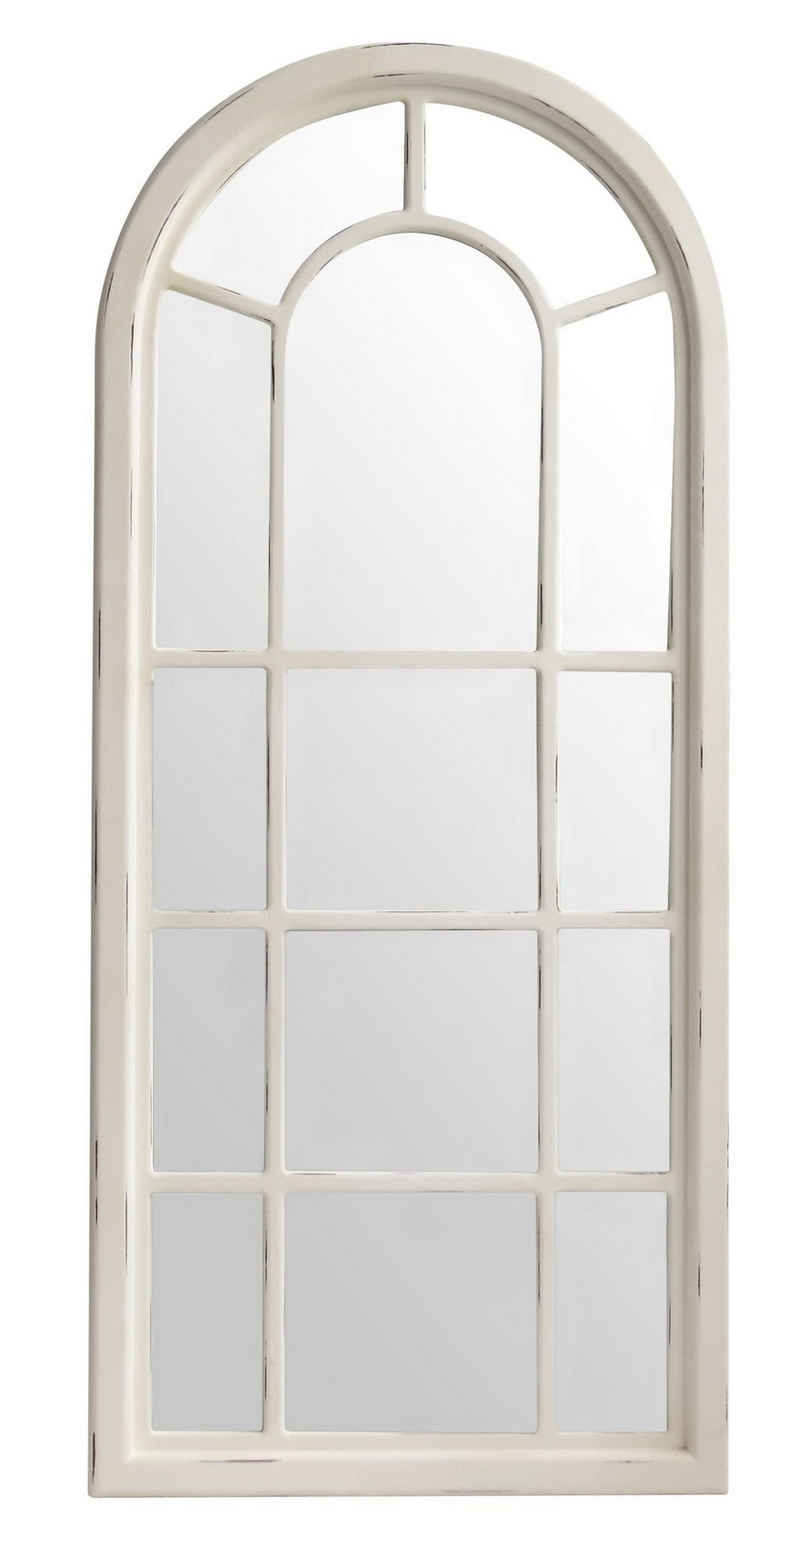 elbmöbel Wandspiegel Spiegel Wandspiegel weiß Landhaus Holz Fensteroptik, Wandspiegel: Sprossen Fenster 70x160x4 cm weiß holz Landhausstil